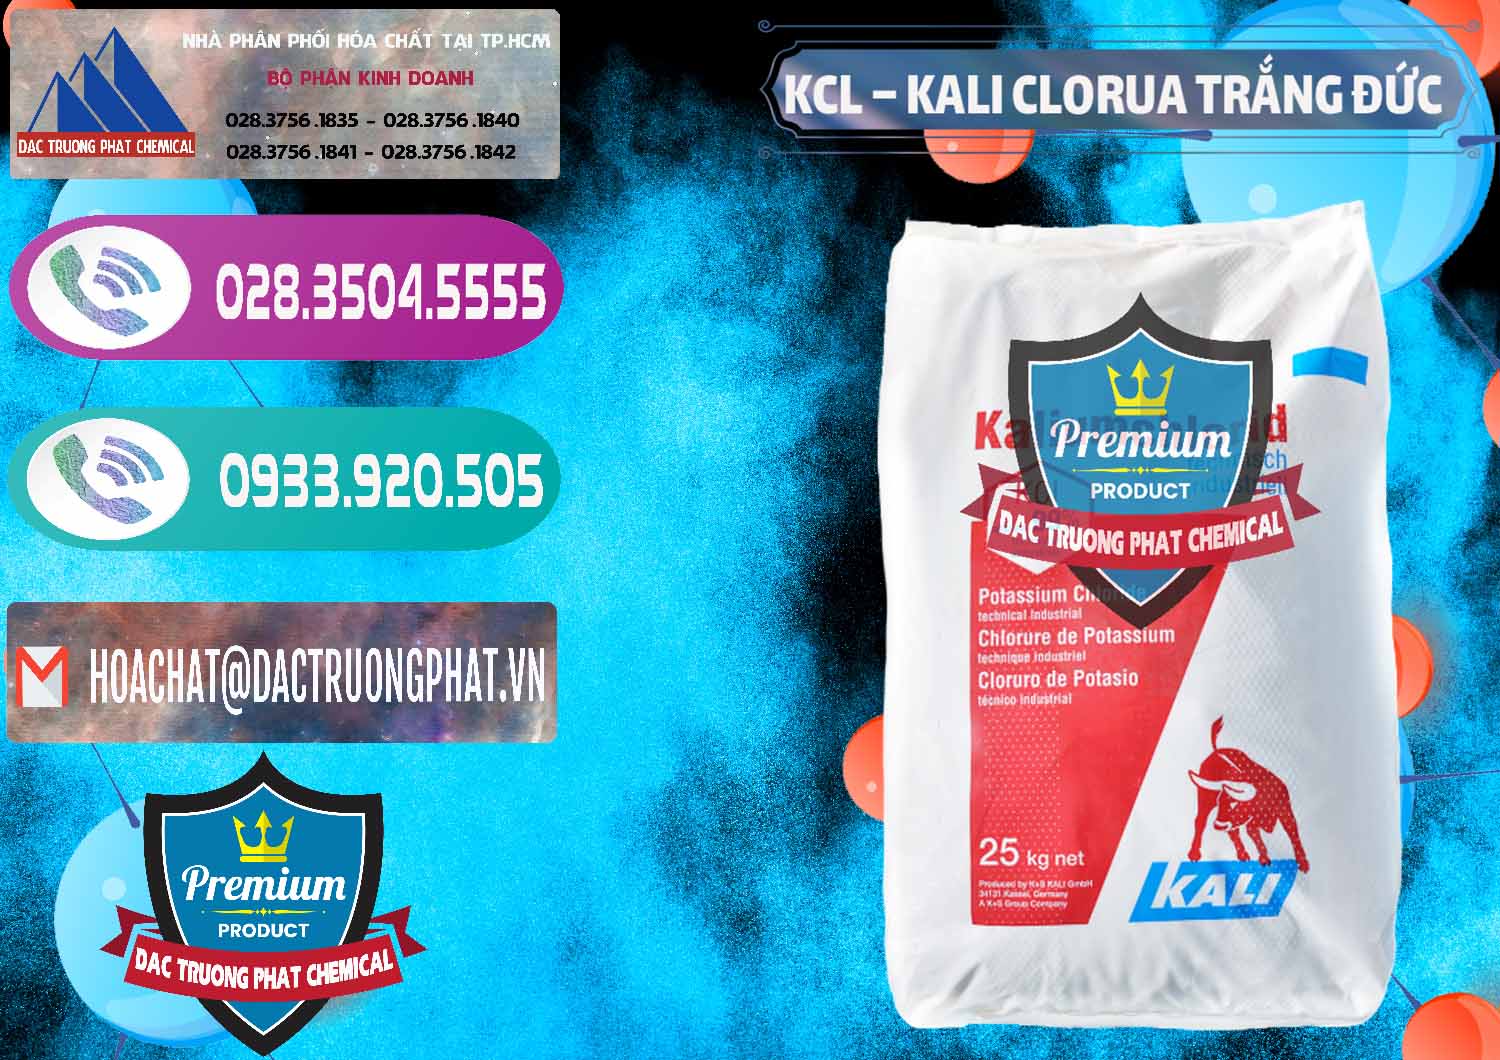 Cty kinh doanh và bán KCL – Kali Clorua Trắng Đức Germany - 0086 - Cung cấp _ kinh doanh hóa chất tại TP.HCM - hoachatxulynuoc.com